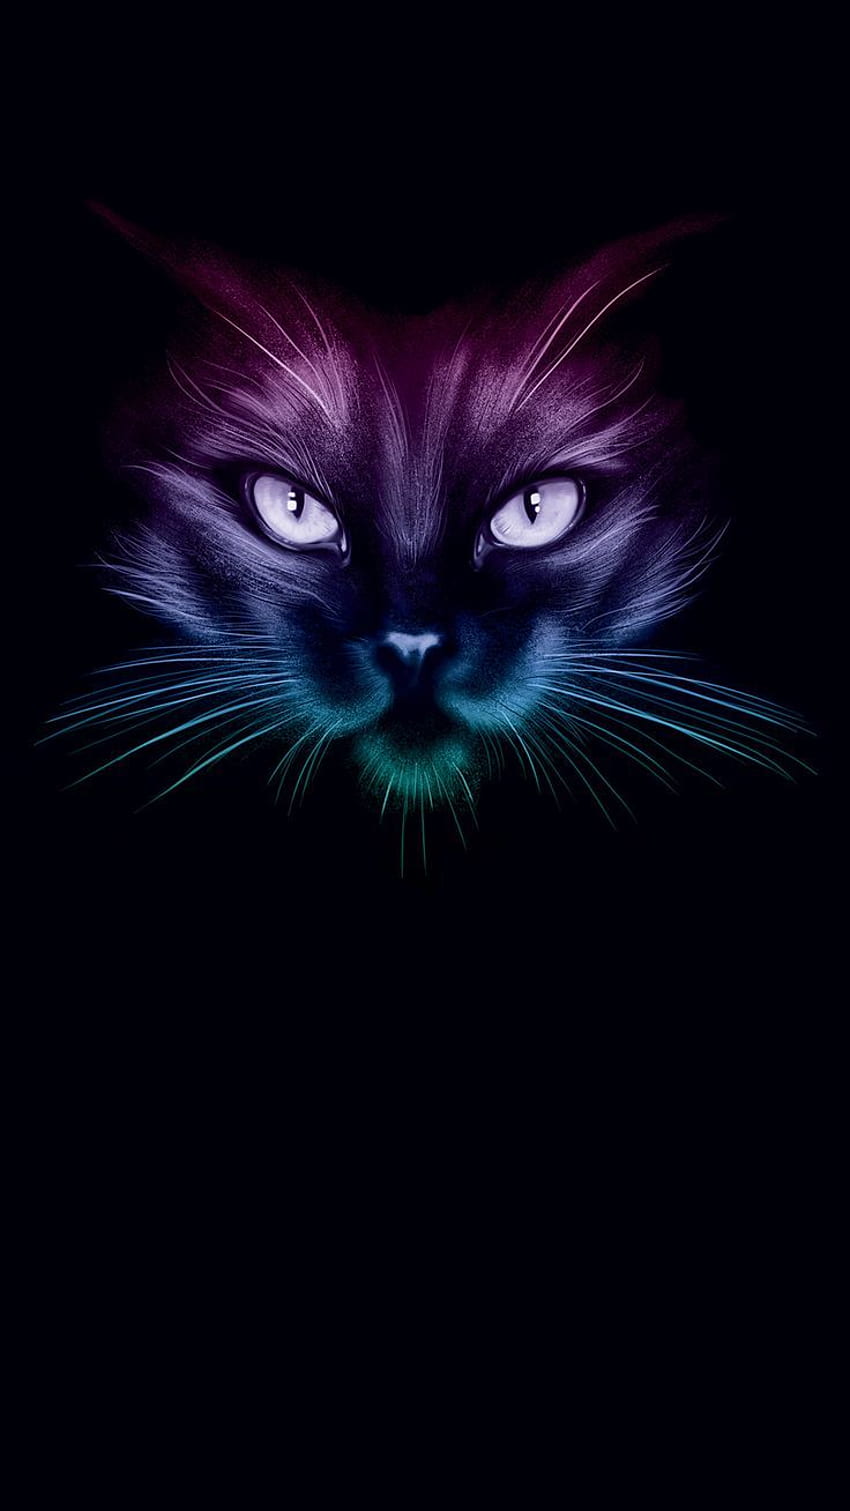 Mèo đen là chủ đề của bức ảnh này, chúng mang đến một vẻ đẹp quyến rũ nhưng cũng đầy bí ẩn. Bạn sẽ yêu thích chúng ngay từ cái nhìn đầu tiên.